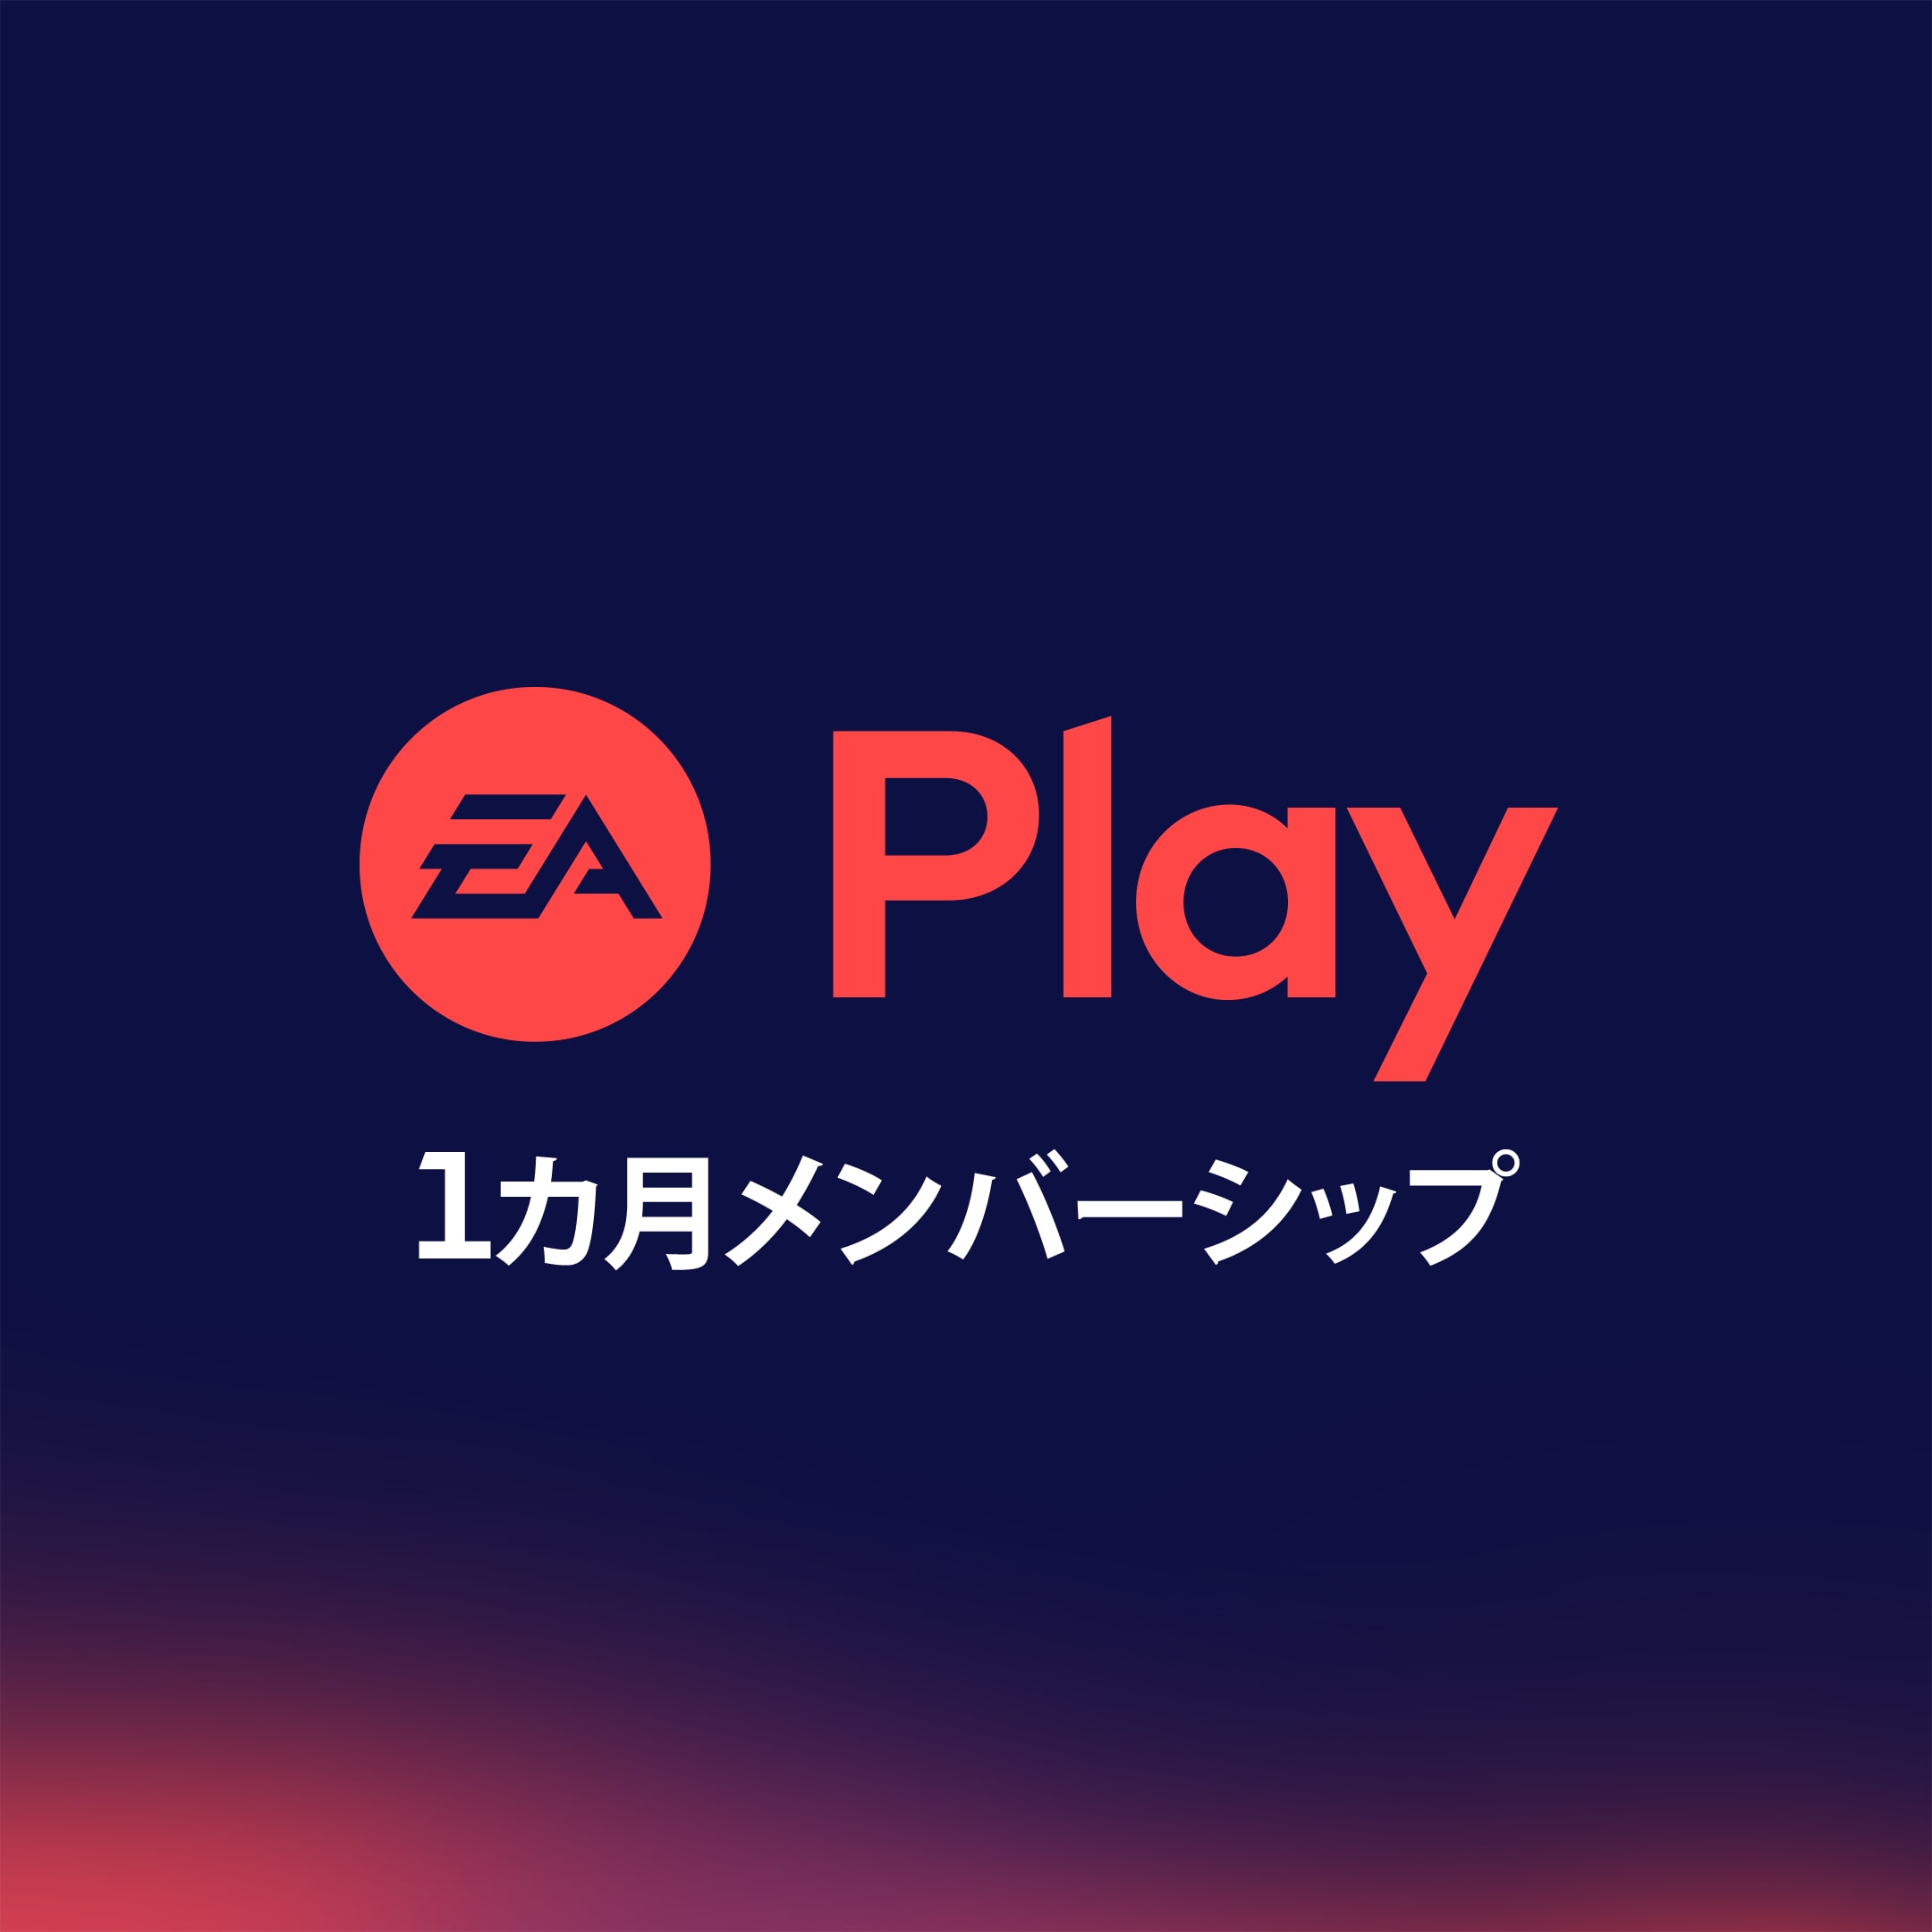 EA Play 1ヶ月登録